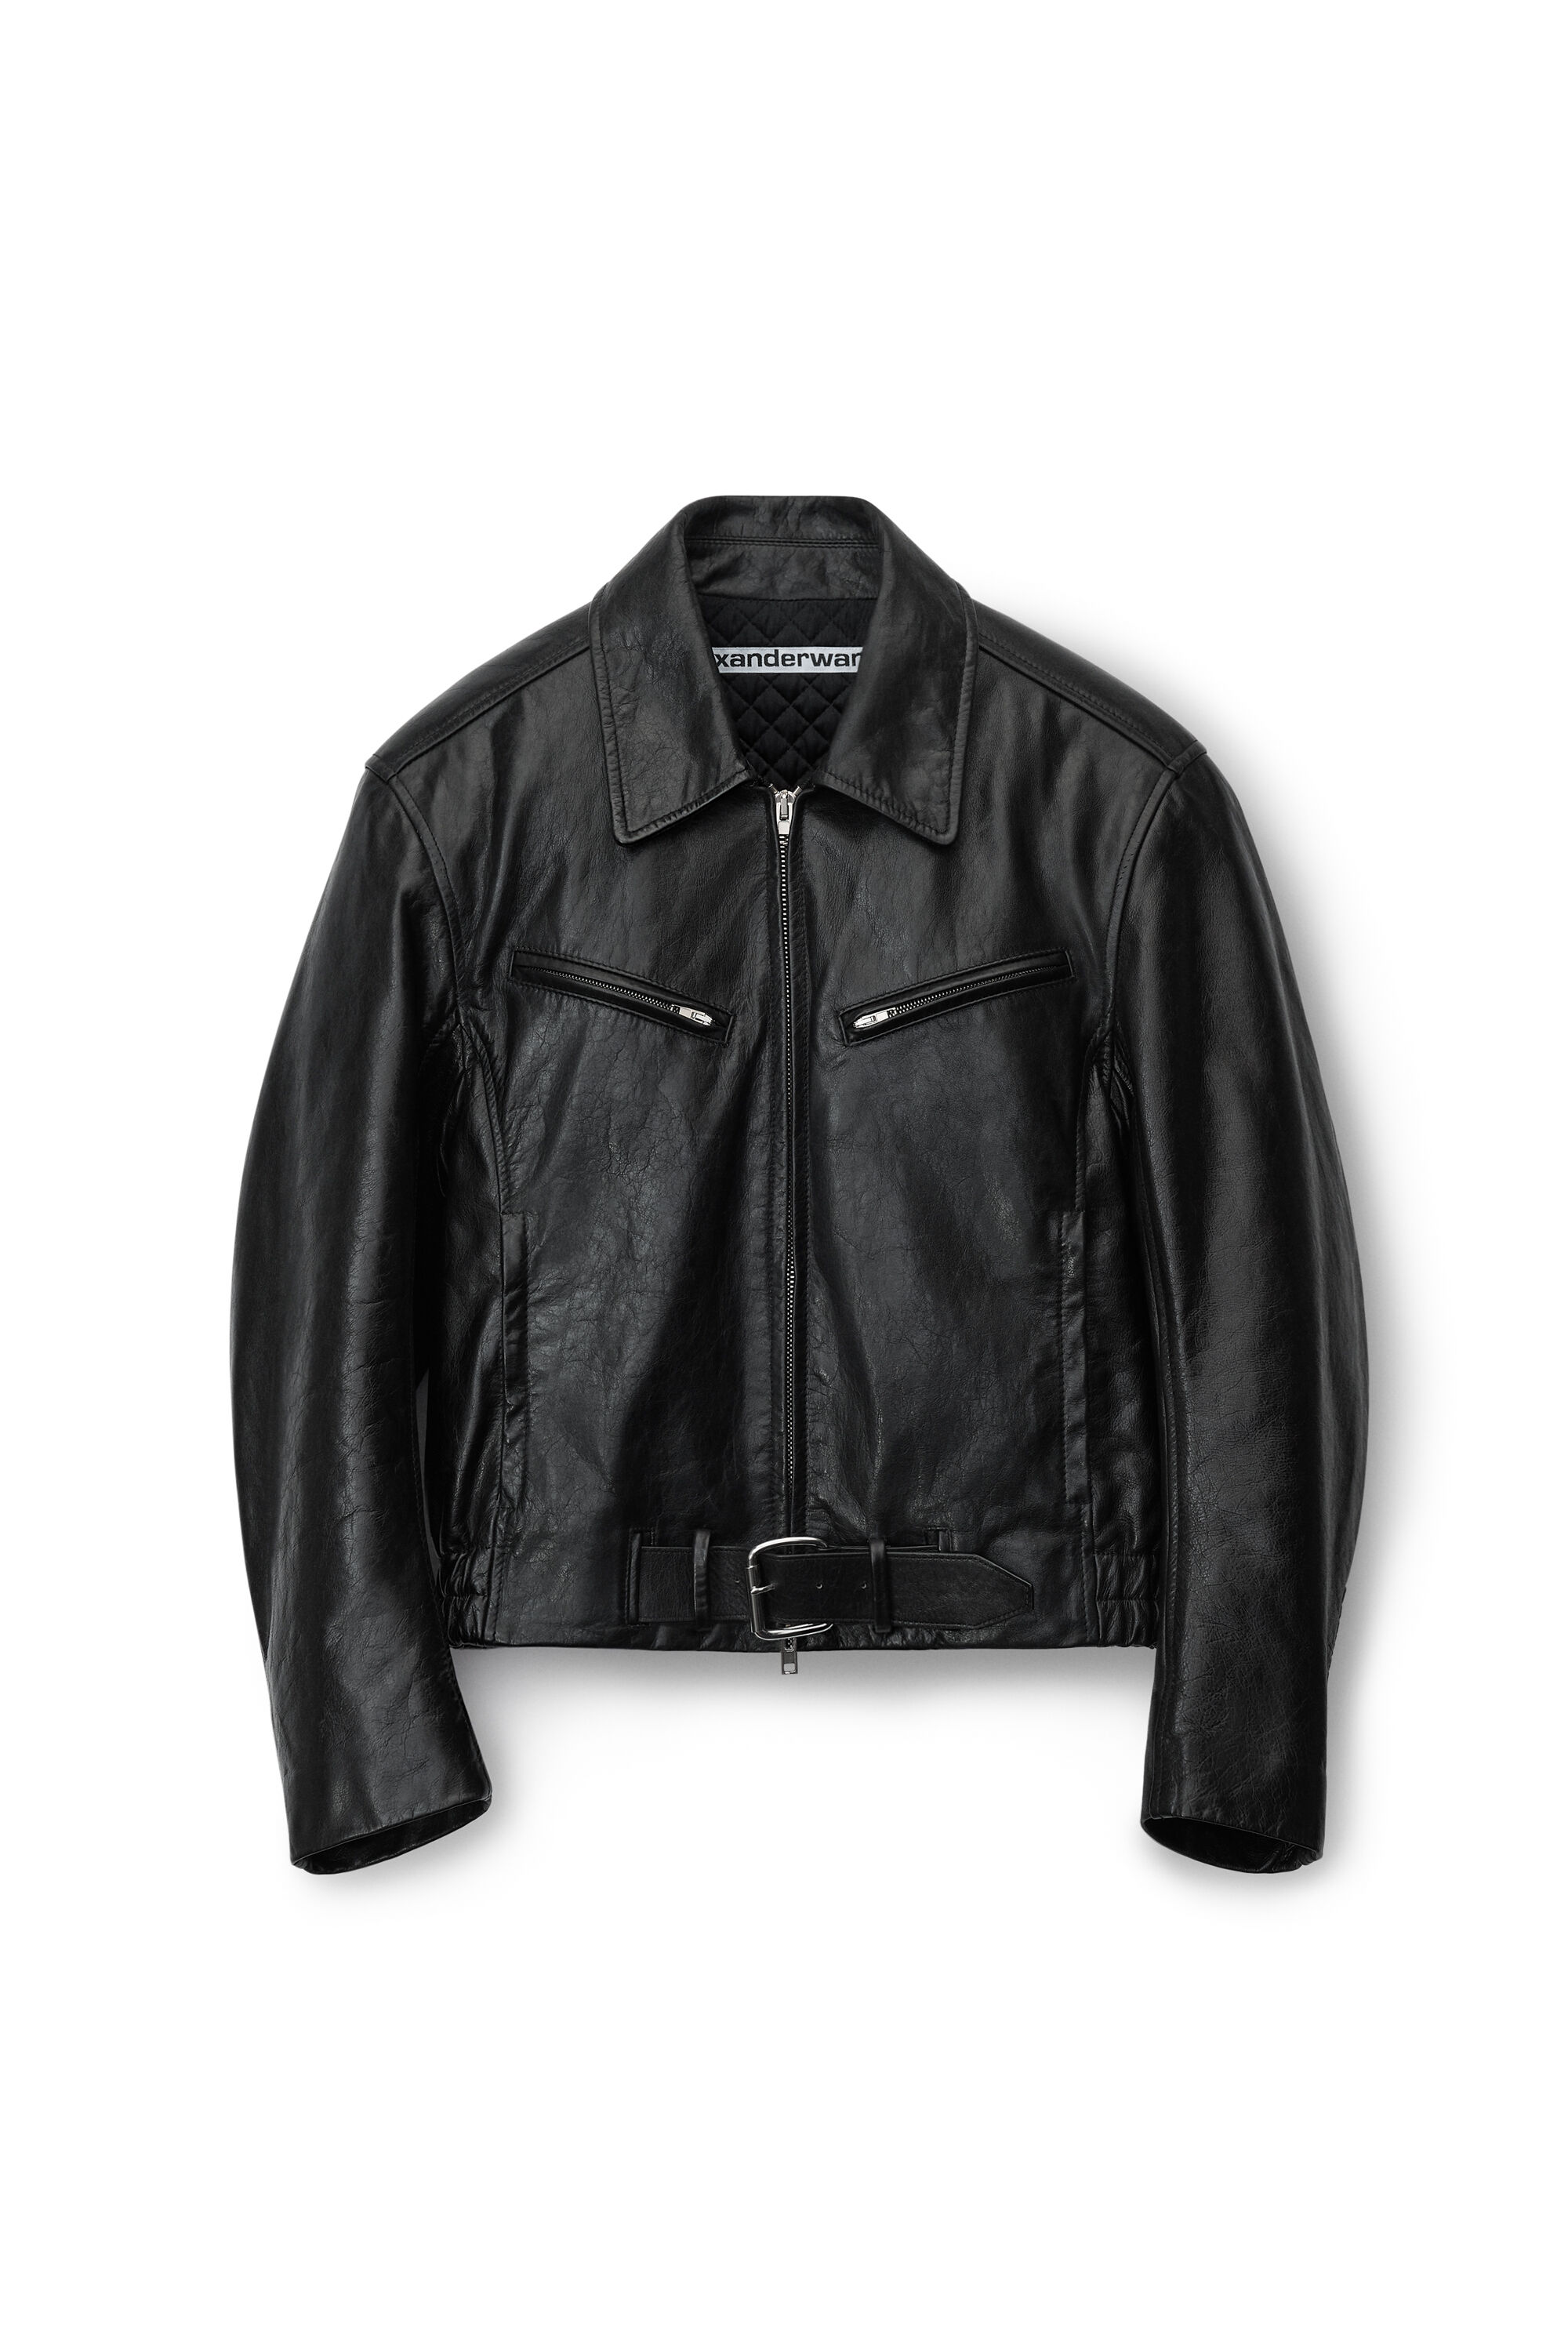 alexanderwang biker jacket in crackle patent leather BLACK 